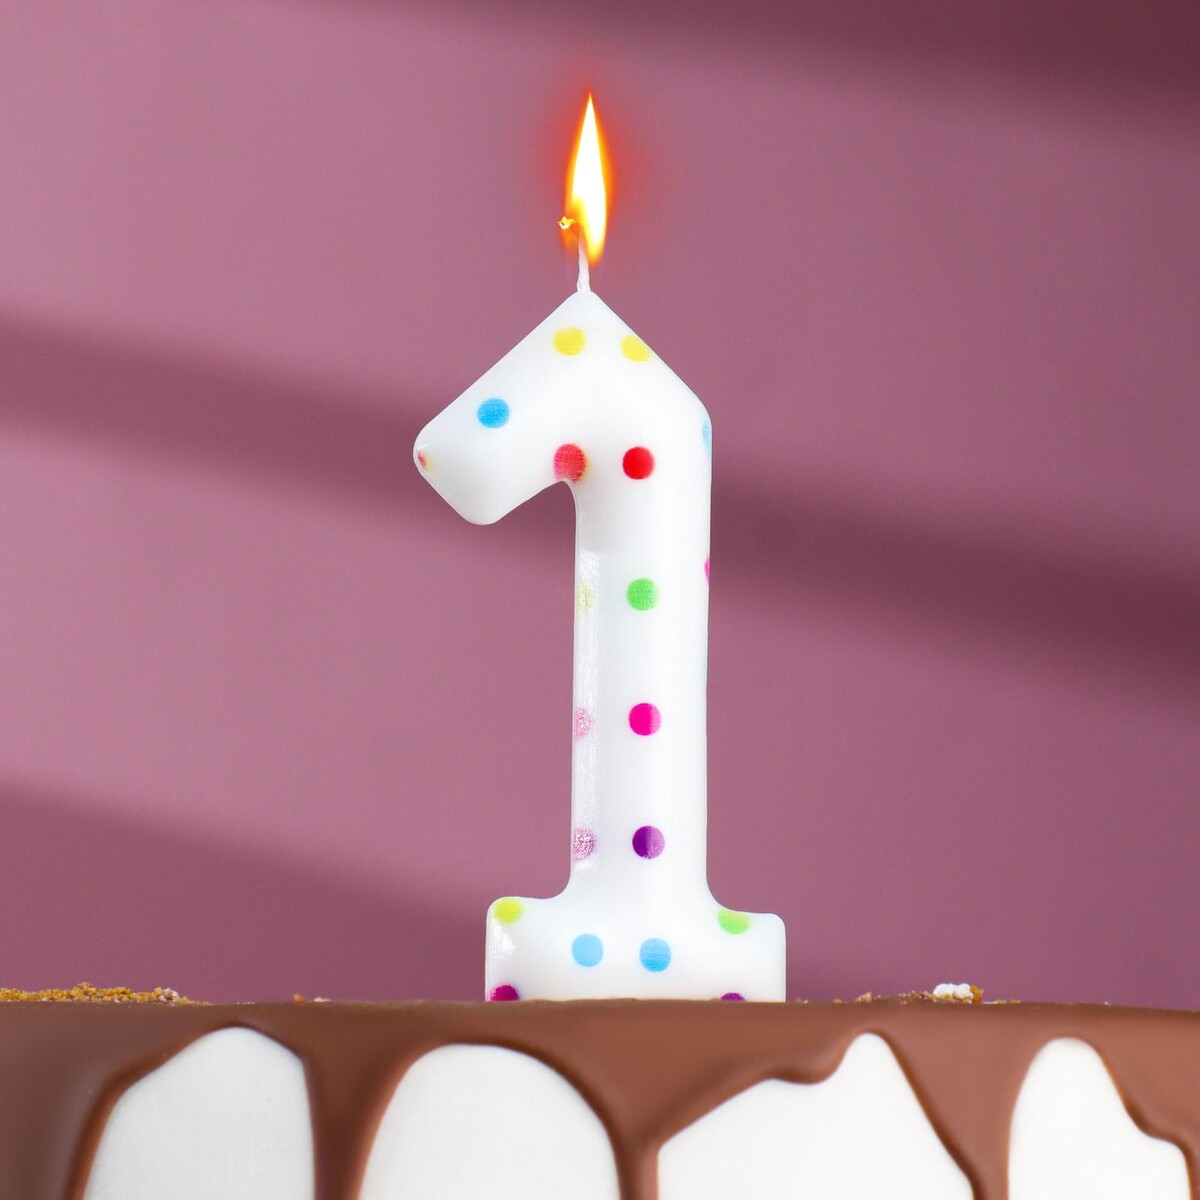 Свеча в торт на день рождения лёгкая йога для похудения идеальное тело за 5 минут в день гарантированный результат в любом возрасте